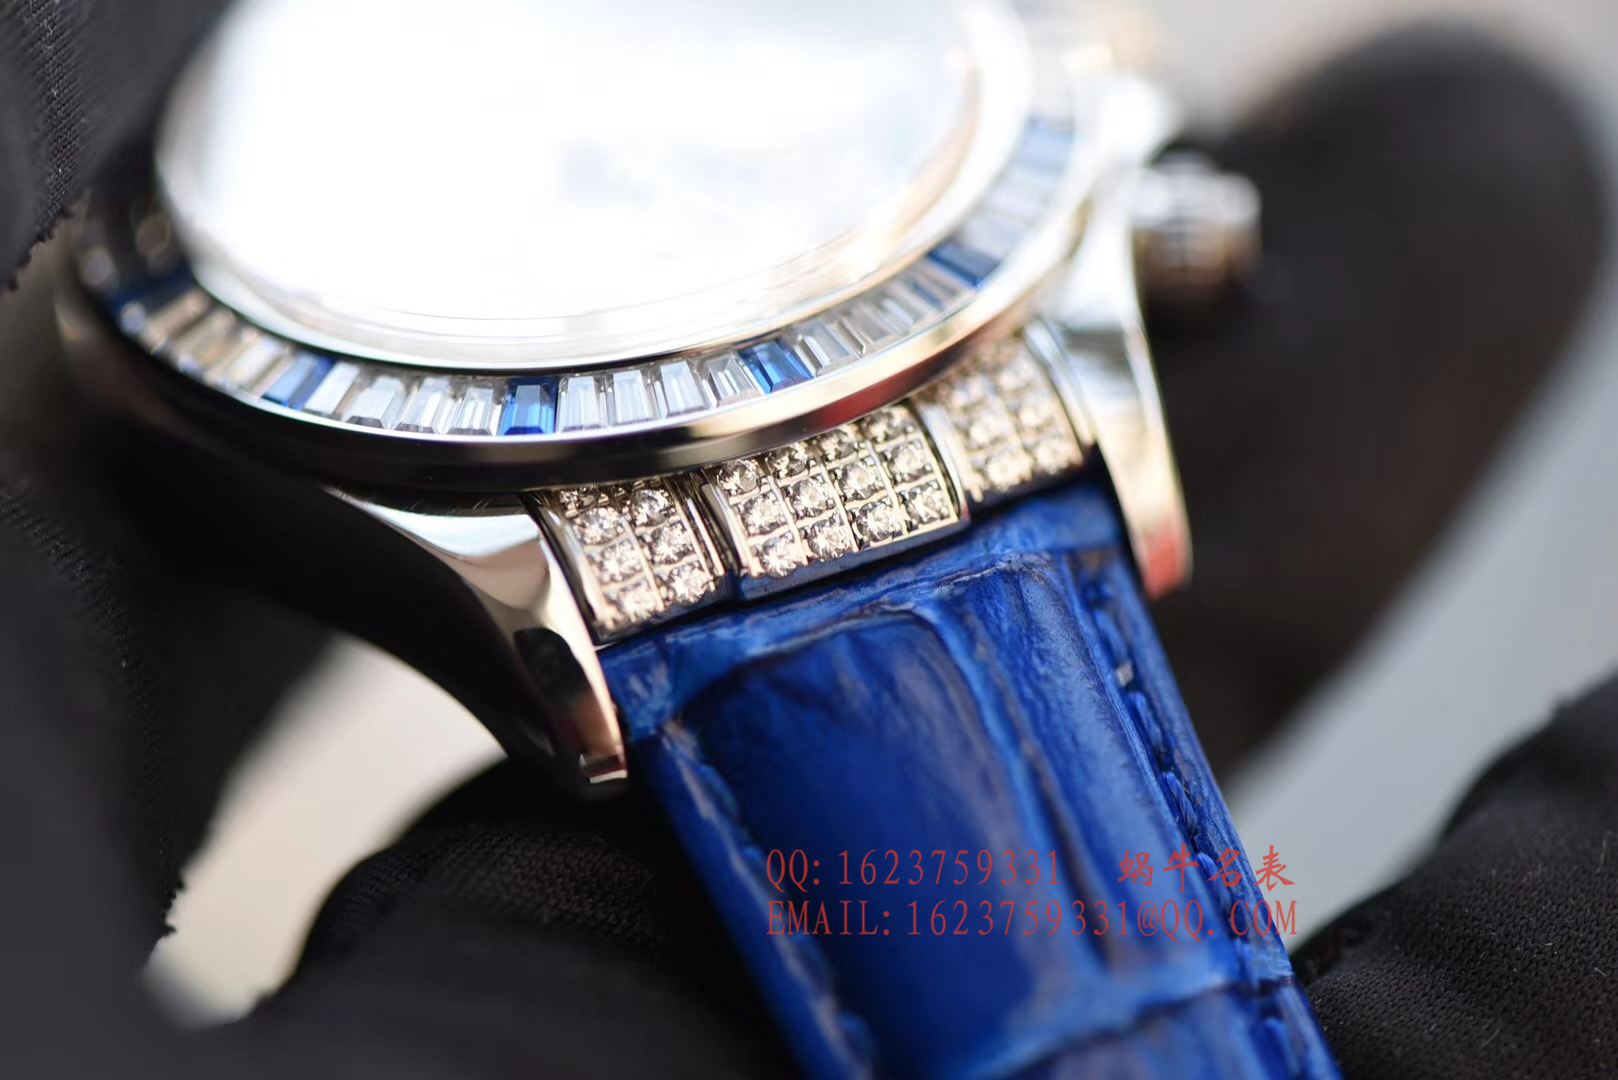 【台湾一比一高仿手表】劳力士宇宙计型迪通拿系列116599 12sa密镶钻表面配蓝珐琅罗马数字腕表 